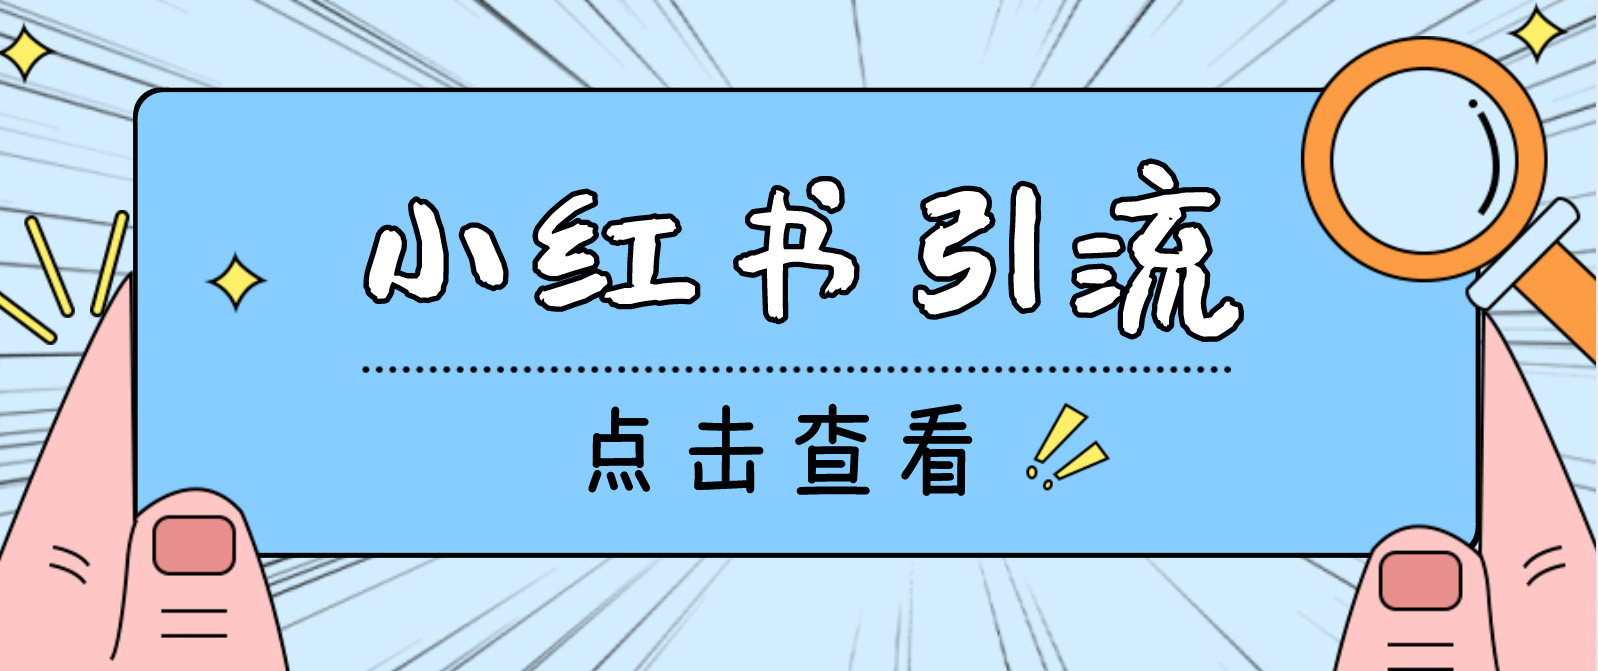 （2553期）【引流必备】光猫-小红书直播间引流【永久脚本+详细教程】